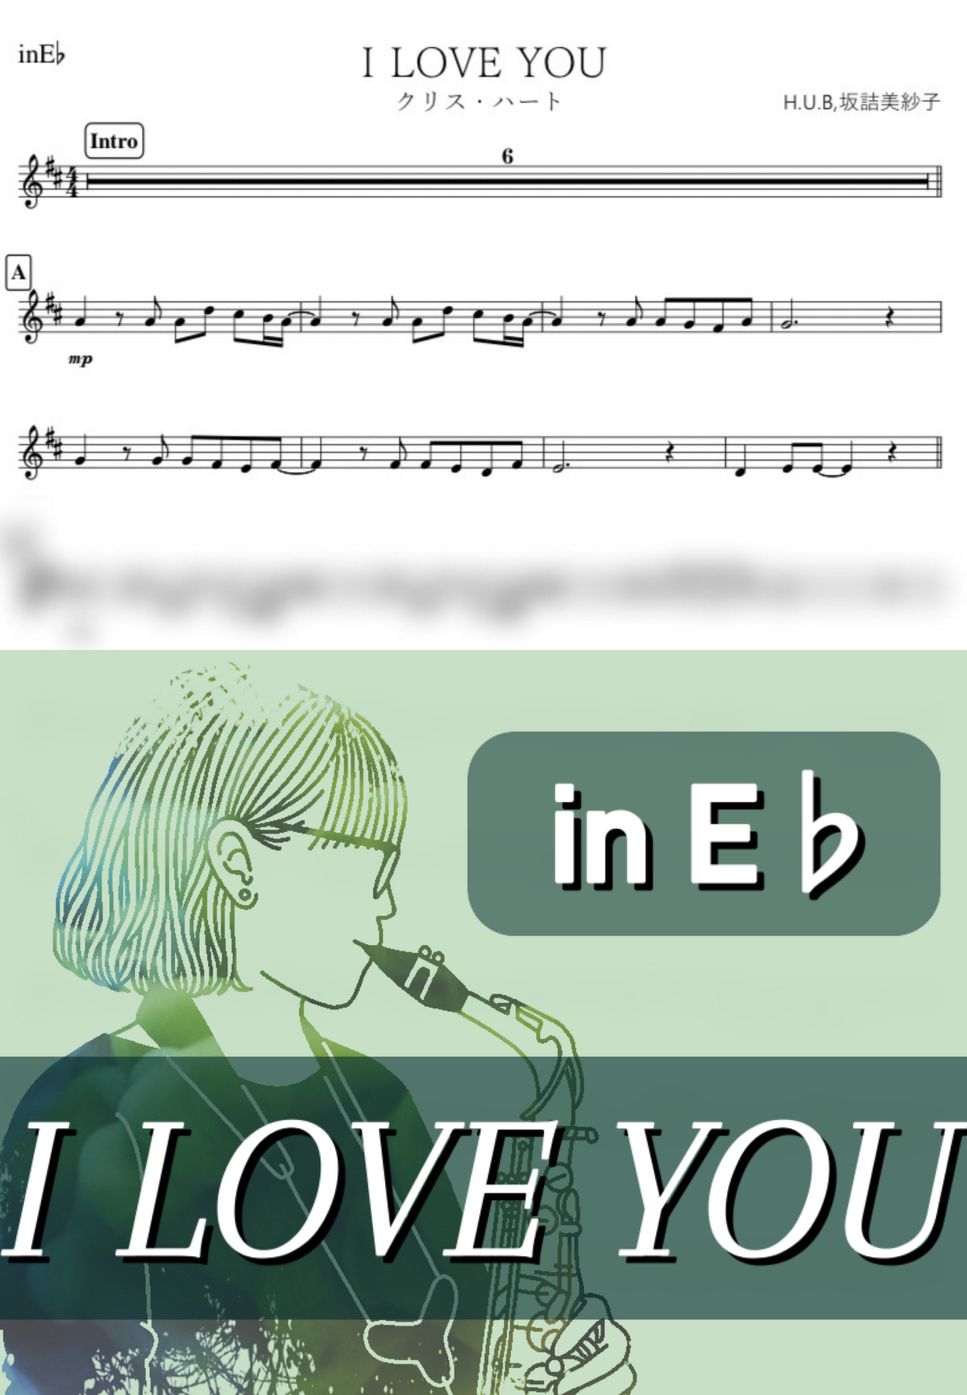 クリス・ハート - I LOVE YOU (E♭) by kanamusic